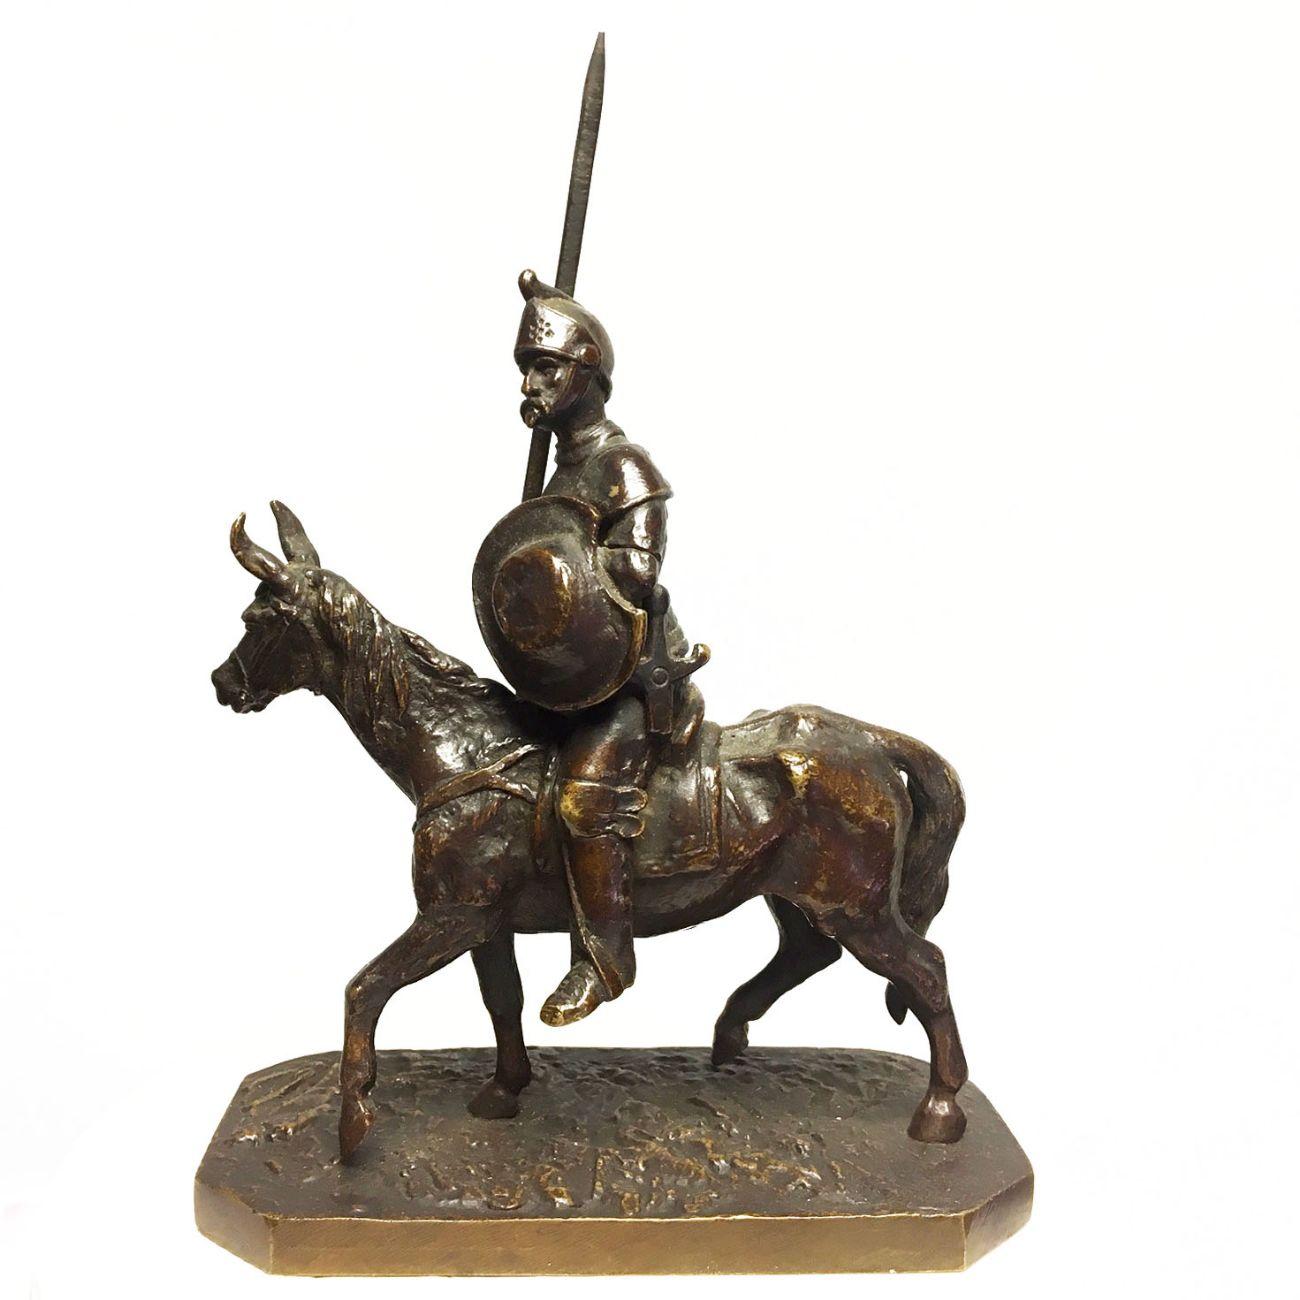 Don Quijote und Sancho Pansa in Bronze Paar von Fratin am Ende des XIX. Jahrhunderts Charaktere aus dem berühmten Roman von Cervantes jeweils ihre stolzen Rossinante und Rucio reiten. Höhenmaß Don Quijote 17 cm (Wir denken, dass der Dorn neu gemacht